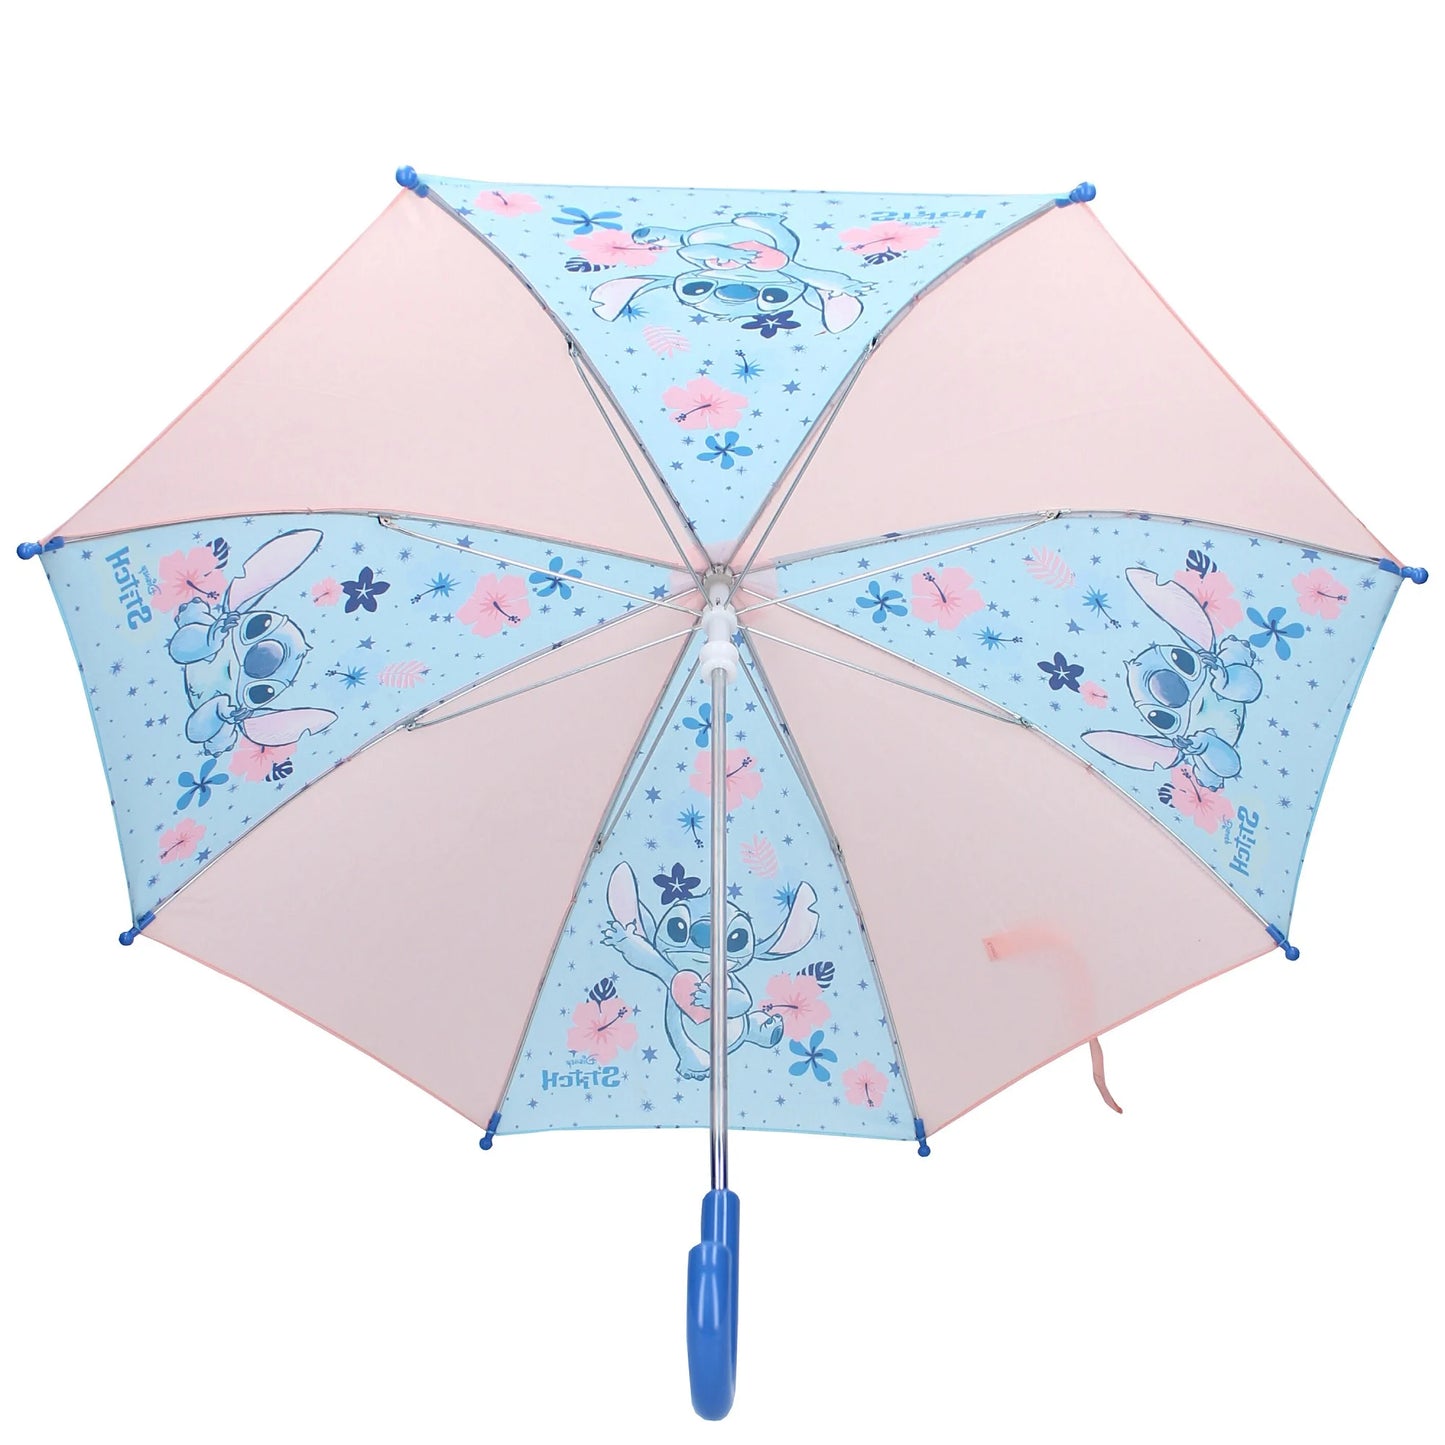 Een blauw handvat accentueert de vrolijke Stitch-print van deze paraplu uit de Sky Defenders-collectie.